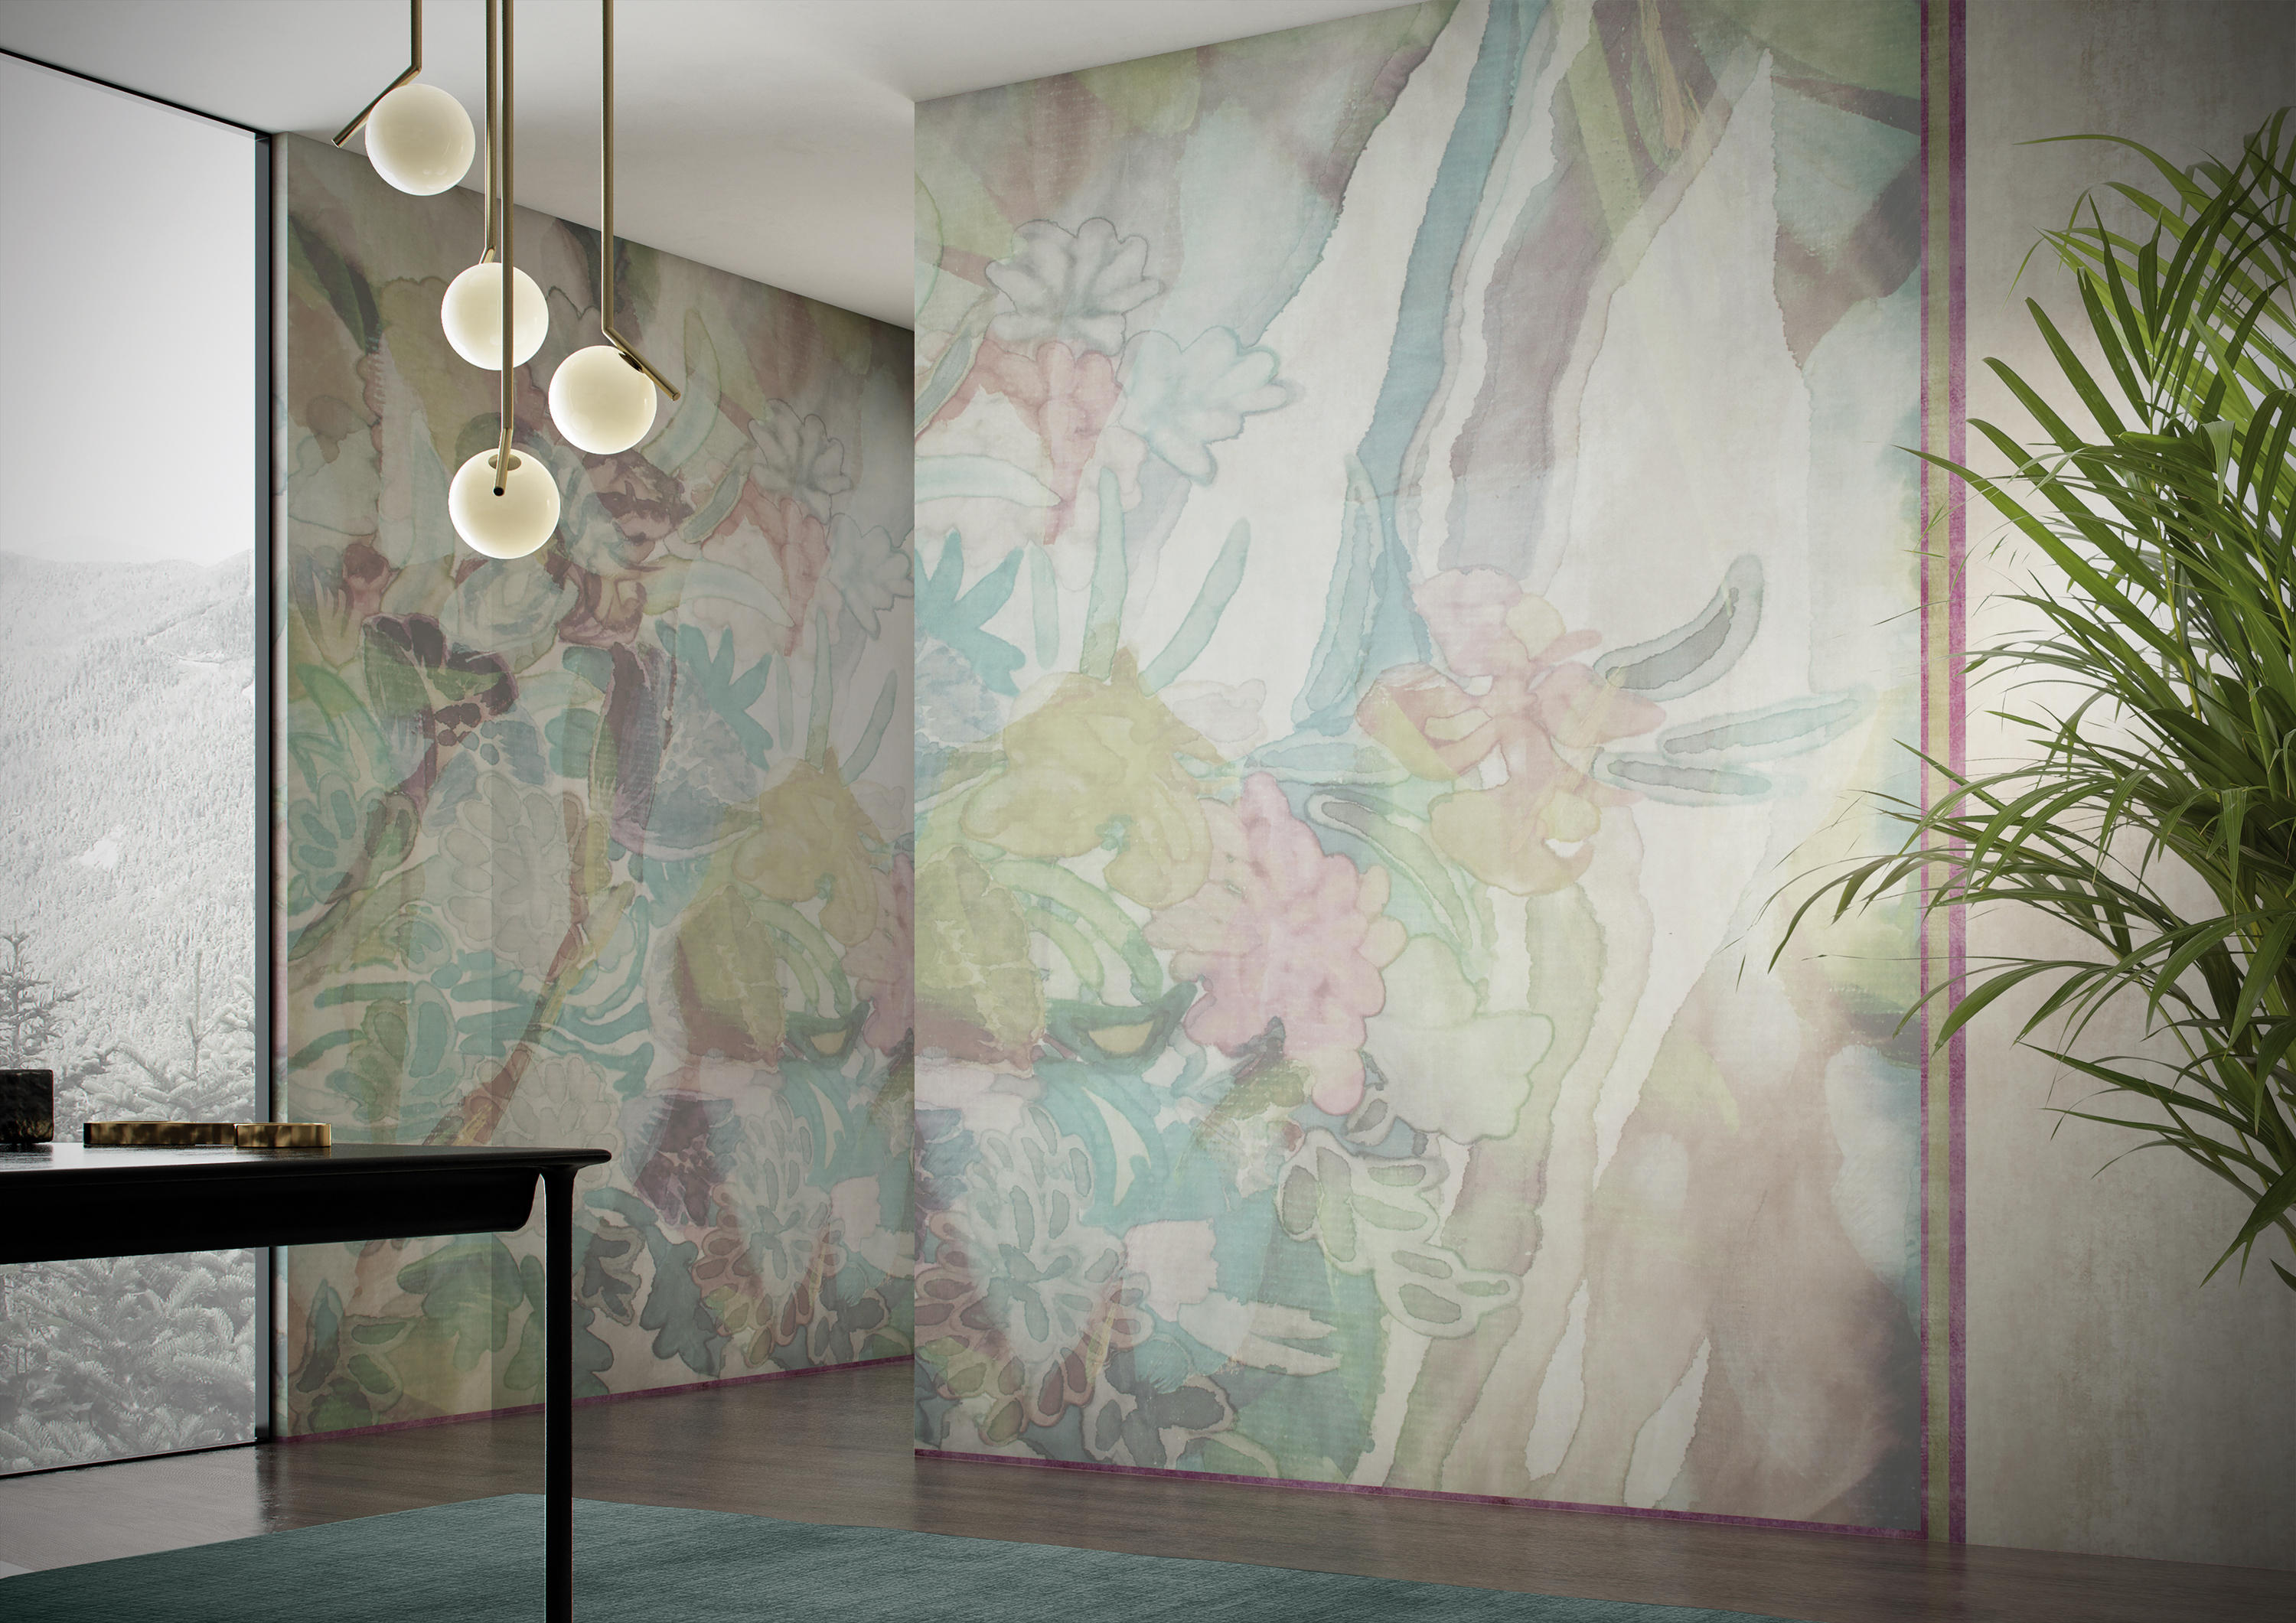 Foulard Breeze Bespoke Wall Coverings From Glamora Architonic